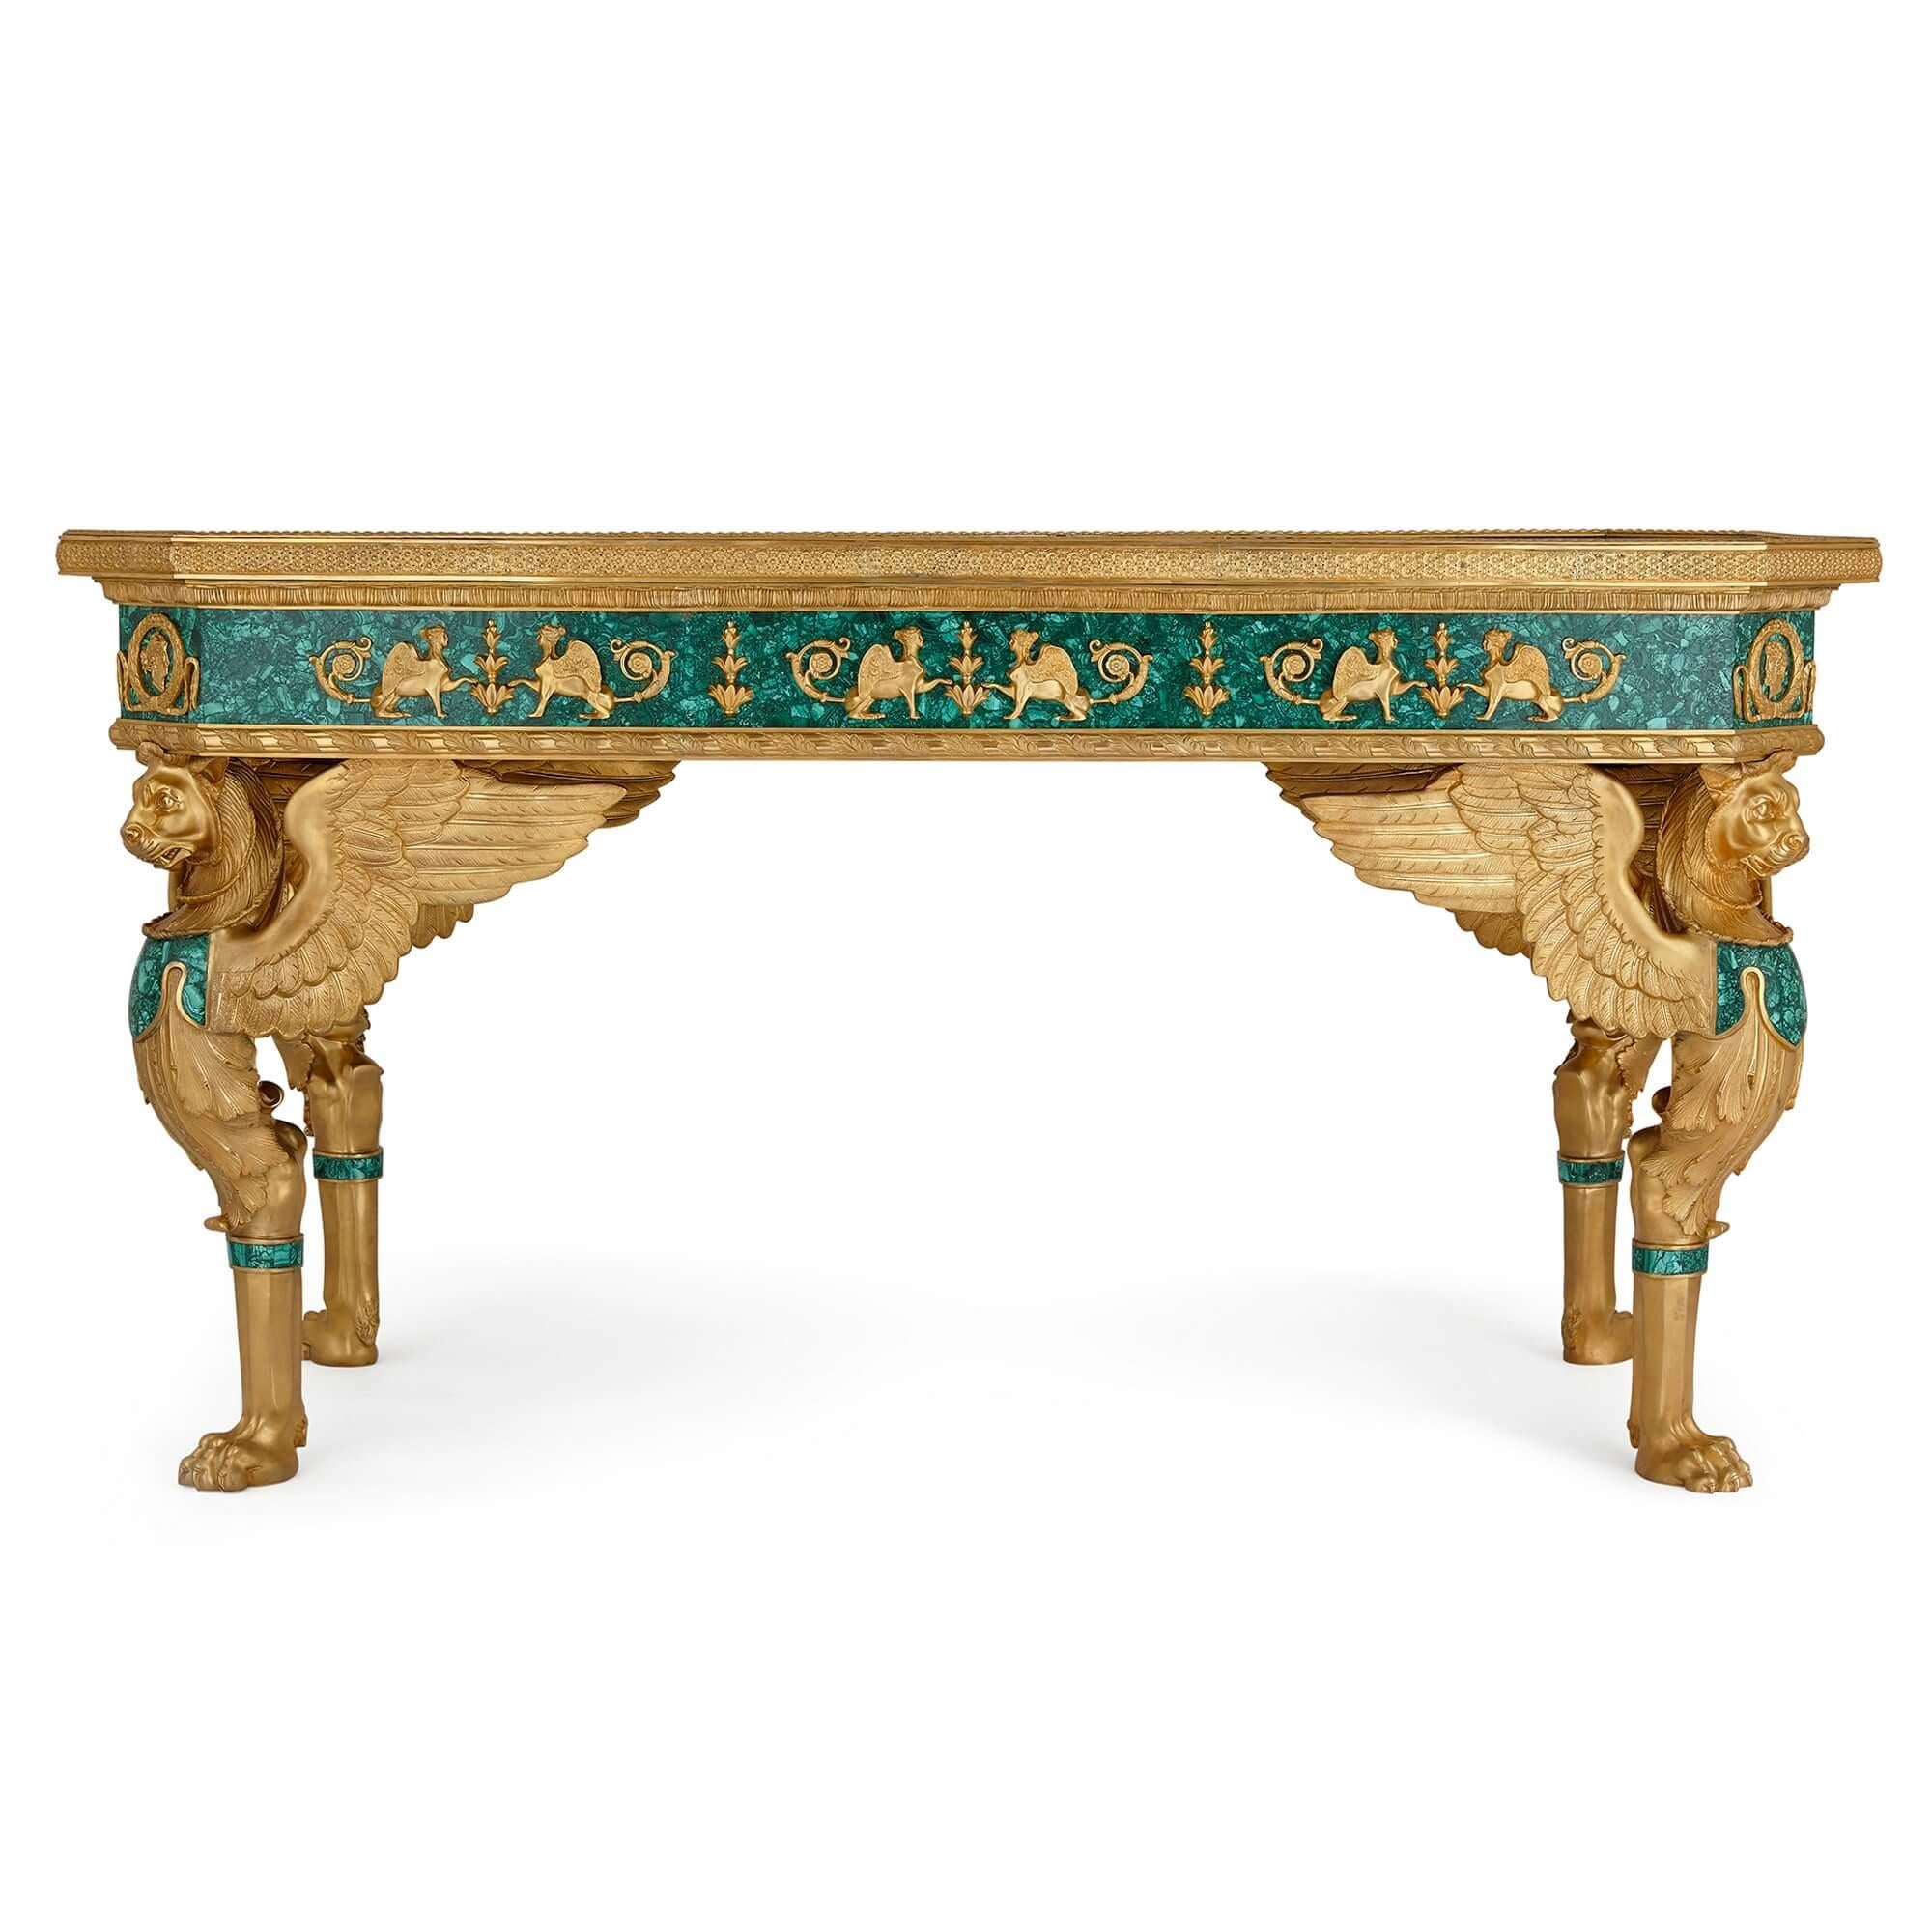 Ein großer französischer Tisch im Empire-Stil aus vergoldeter Bronze und Malachit.
Französisch, 20. Jahrhundert.
Höhe: 85cm, Breite: 160cm, Tiefe: 79cm

Dieser prächtige Tisch, ein großartiges und sehr beeindruckendes Objekt, ist ein